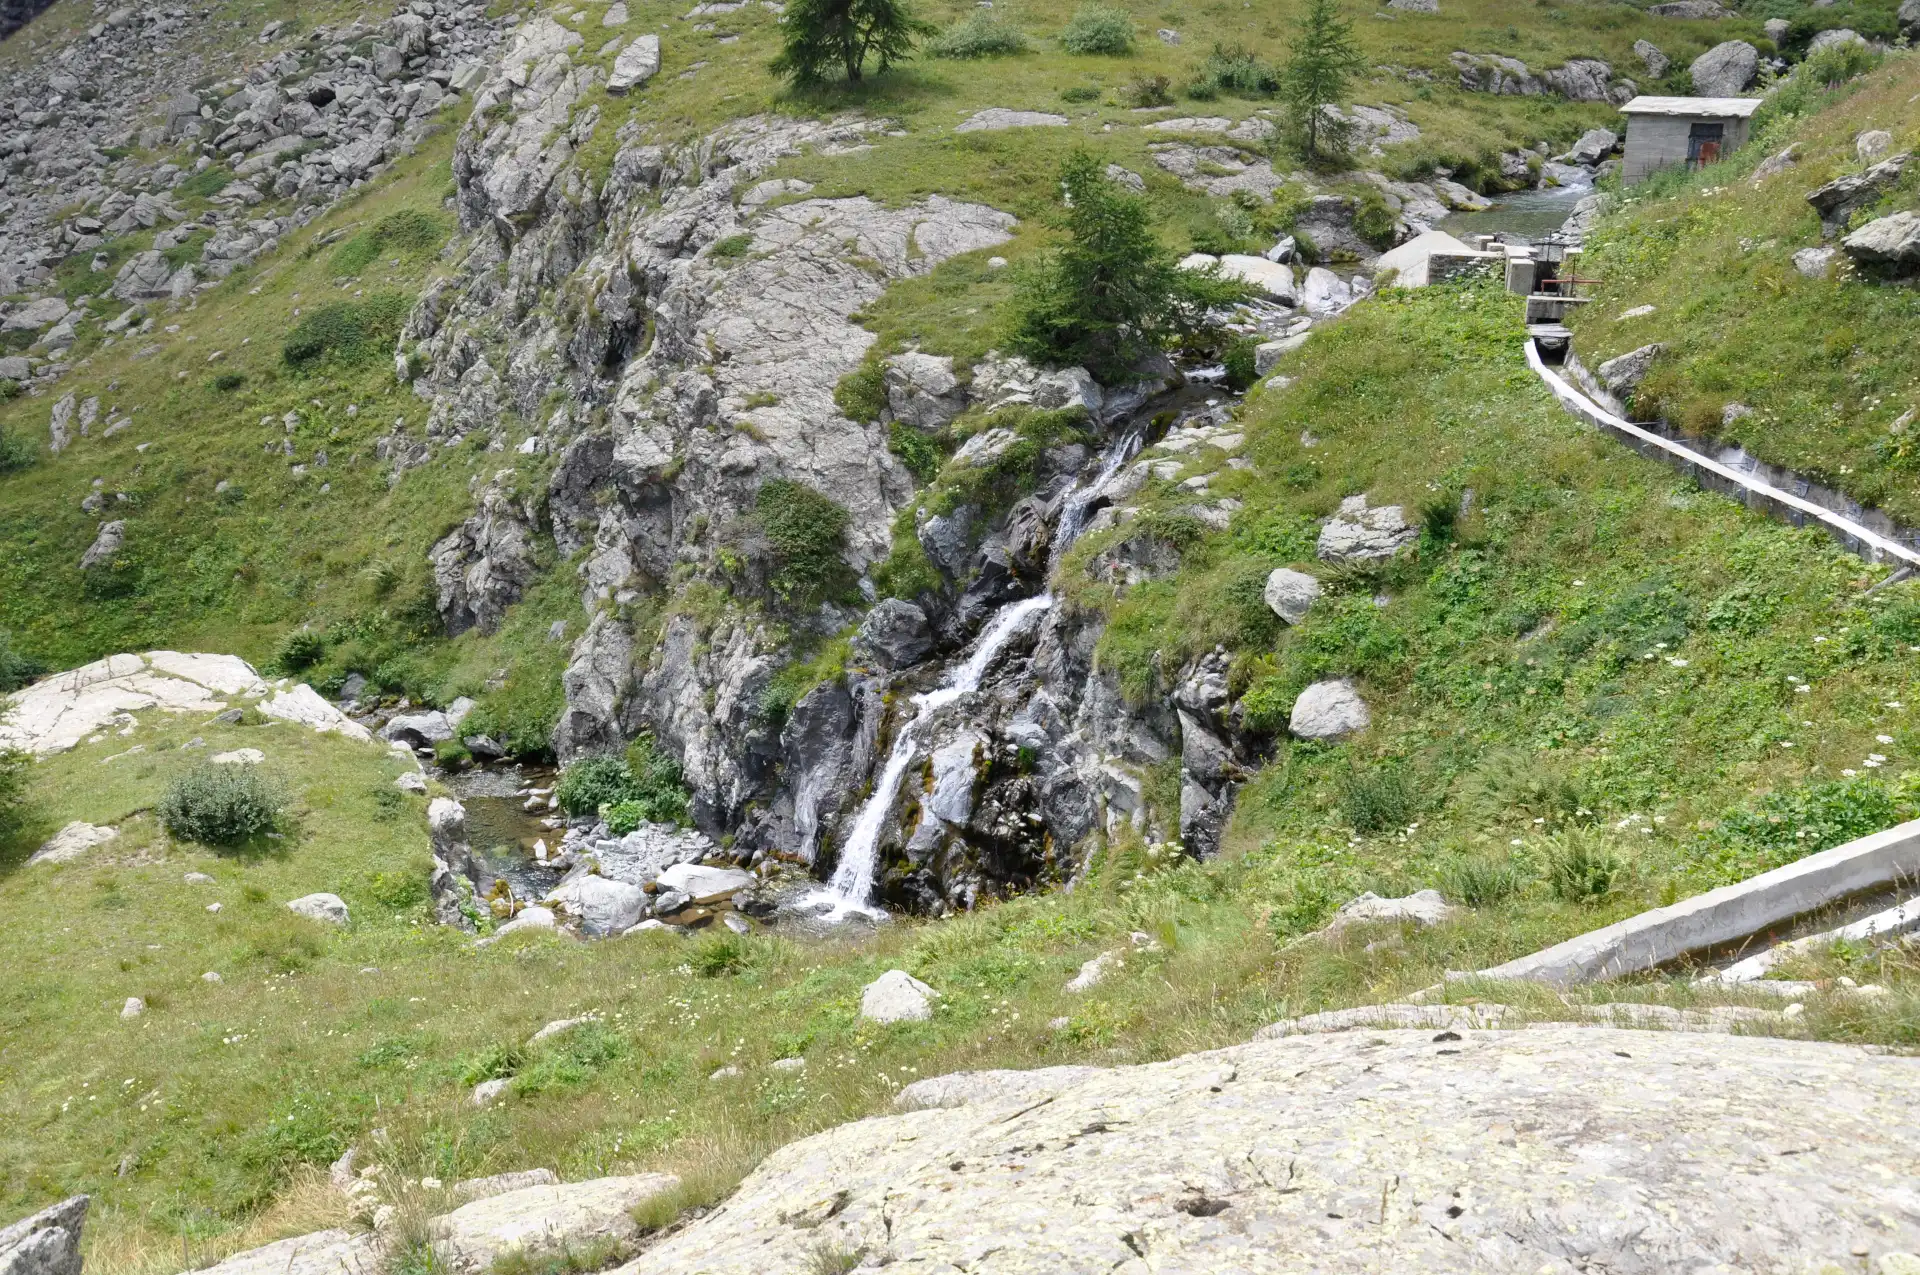 Quattro passi in montagna - Gita al Pian del re, alla scoperta delle sorgenti del po, sotto il Monviso